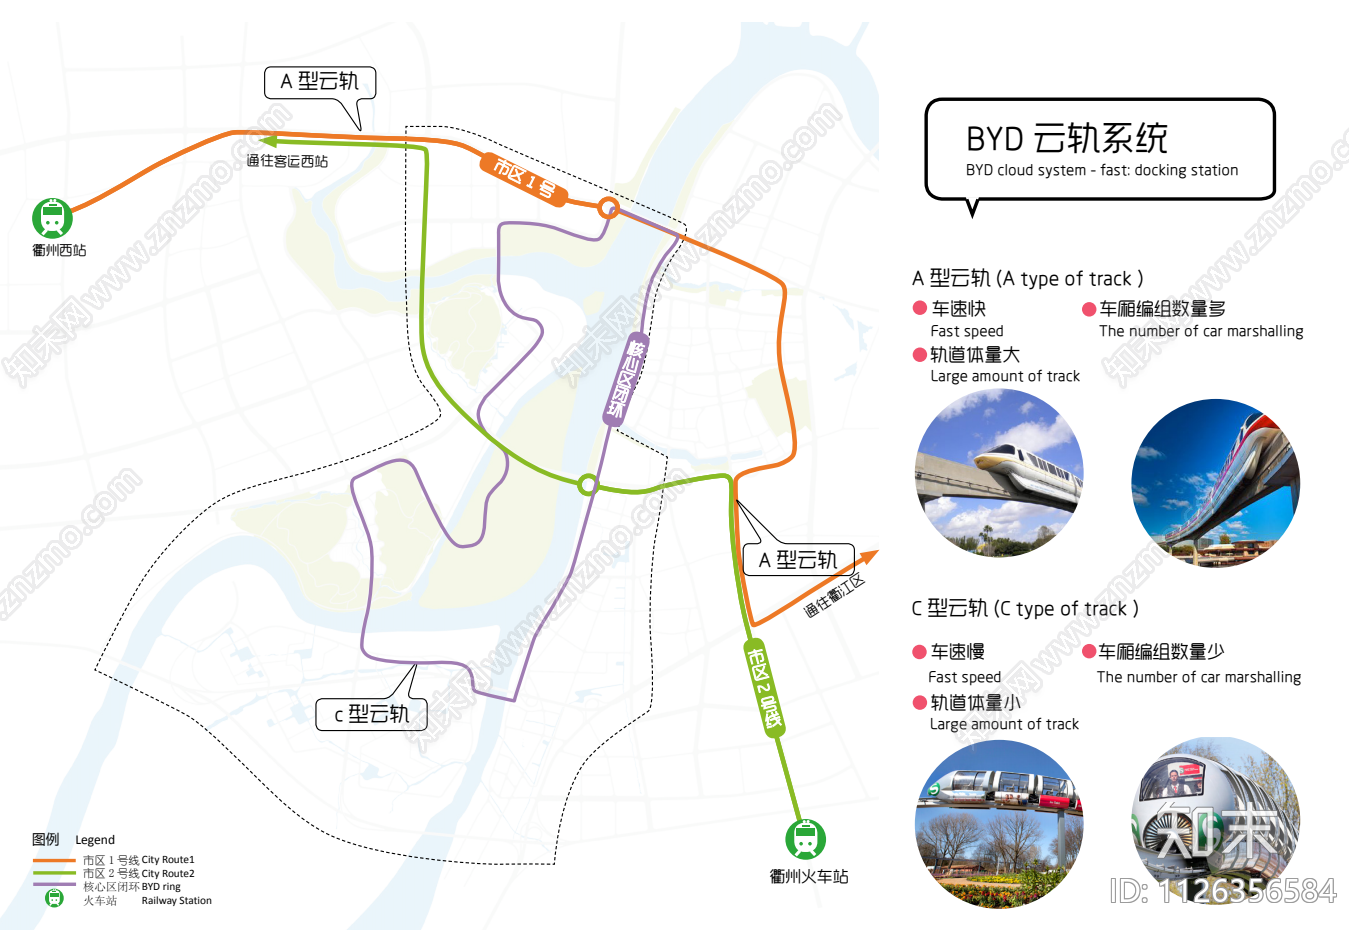 衢州核心圈层策划及城市设计方案文本下载【ID:1126356584】